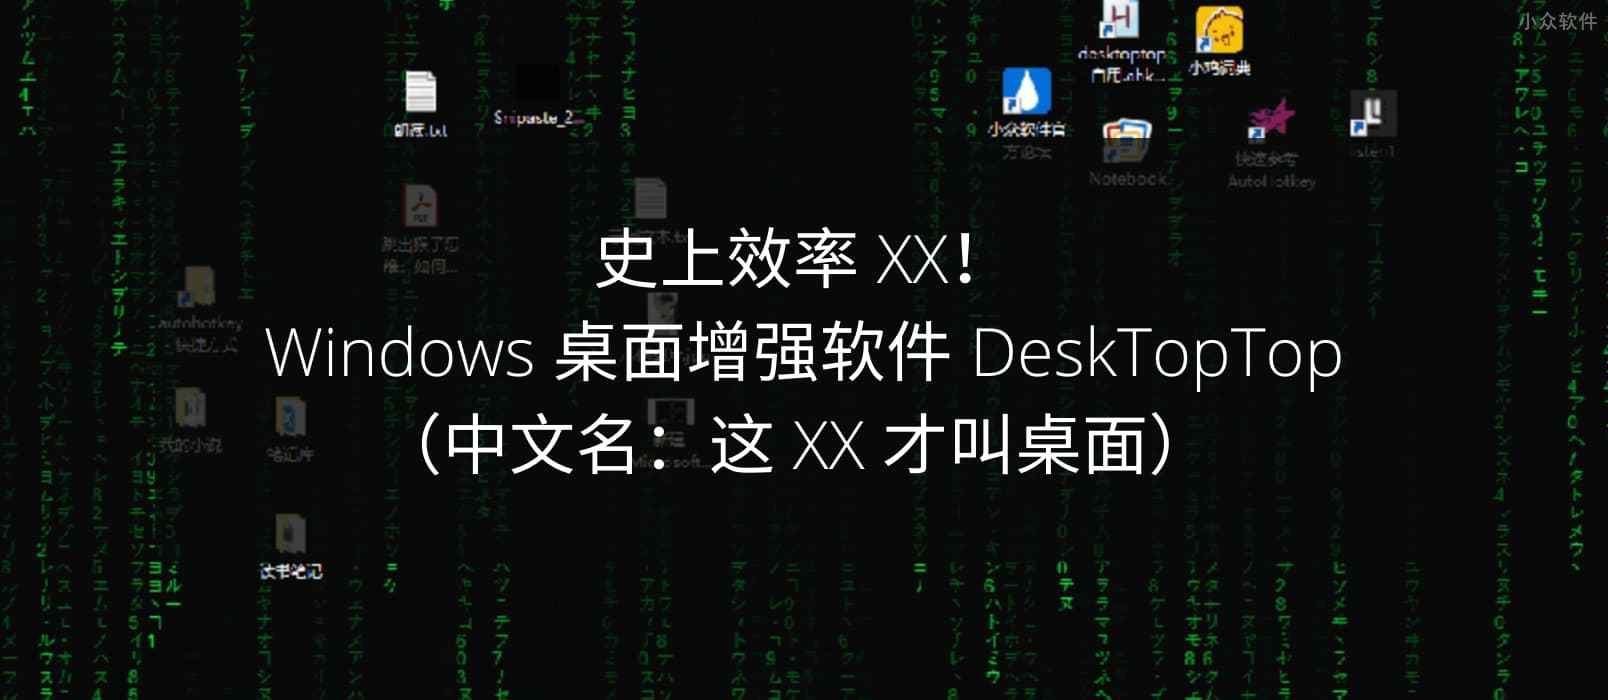 史上效率 XX！Windows 桌面增强软件 DeskTopTop（中文名：这 XX 才叫桌面）  1